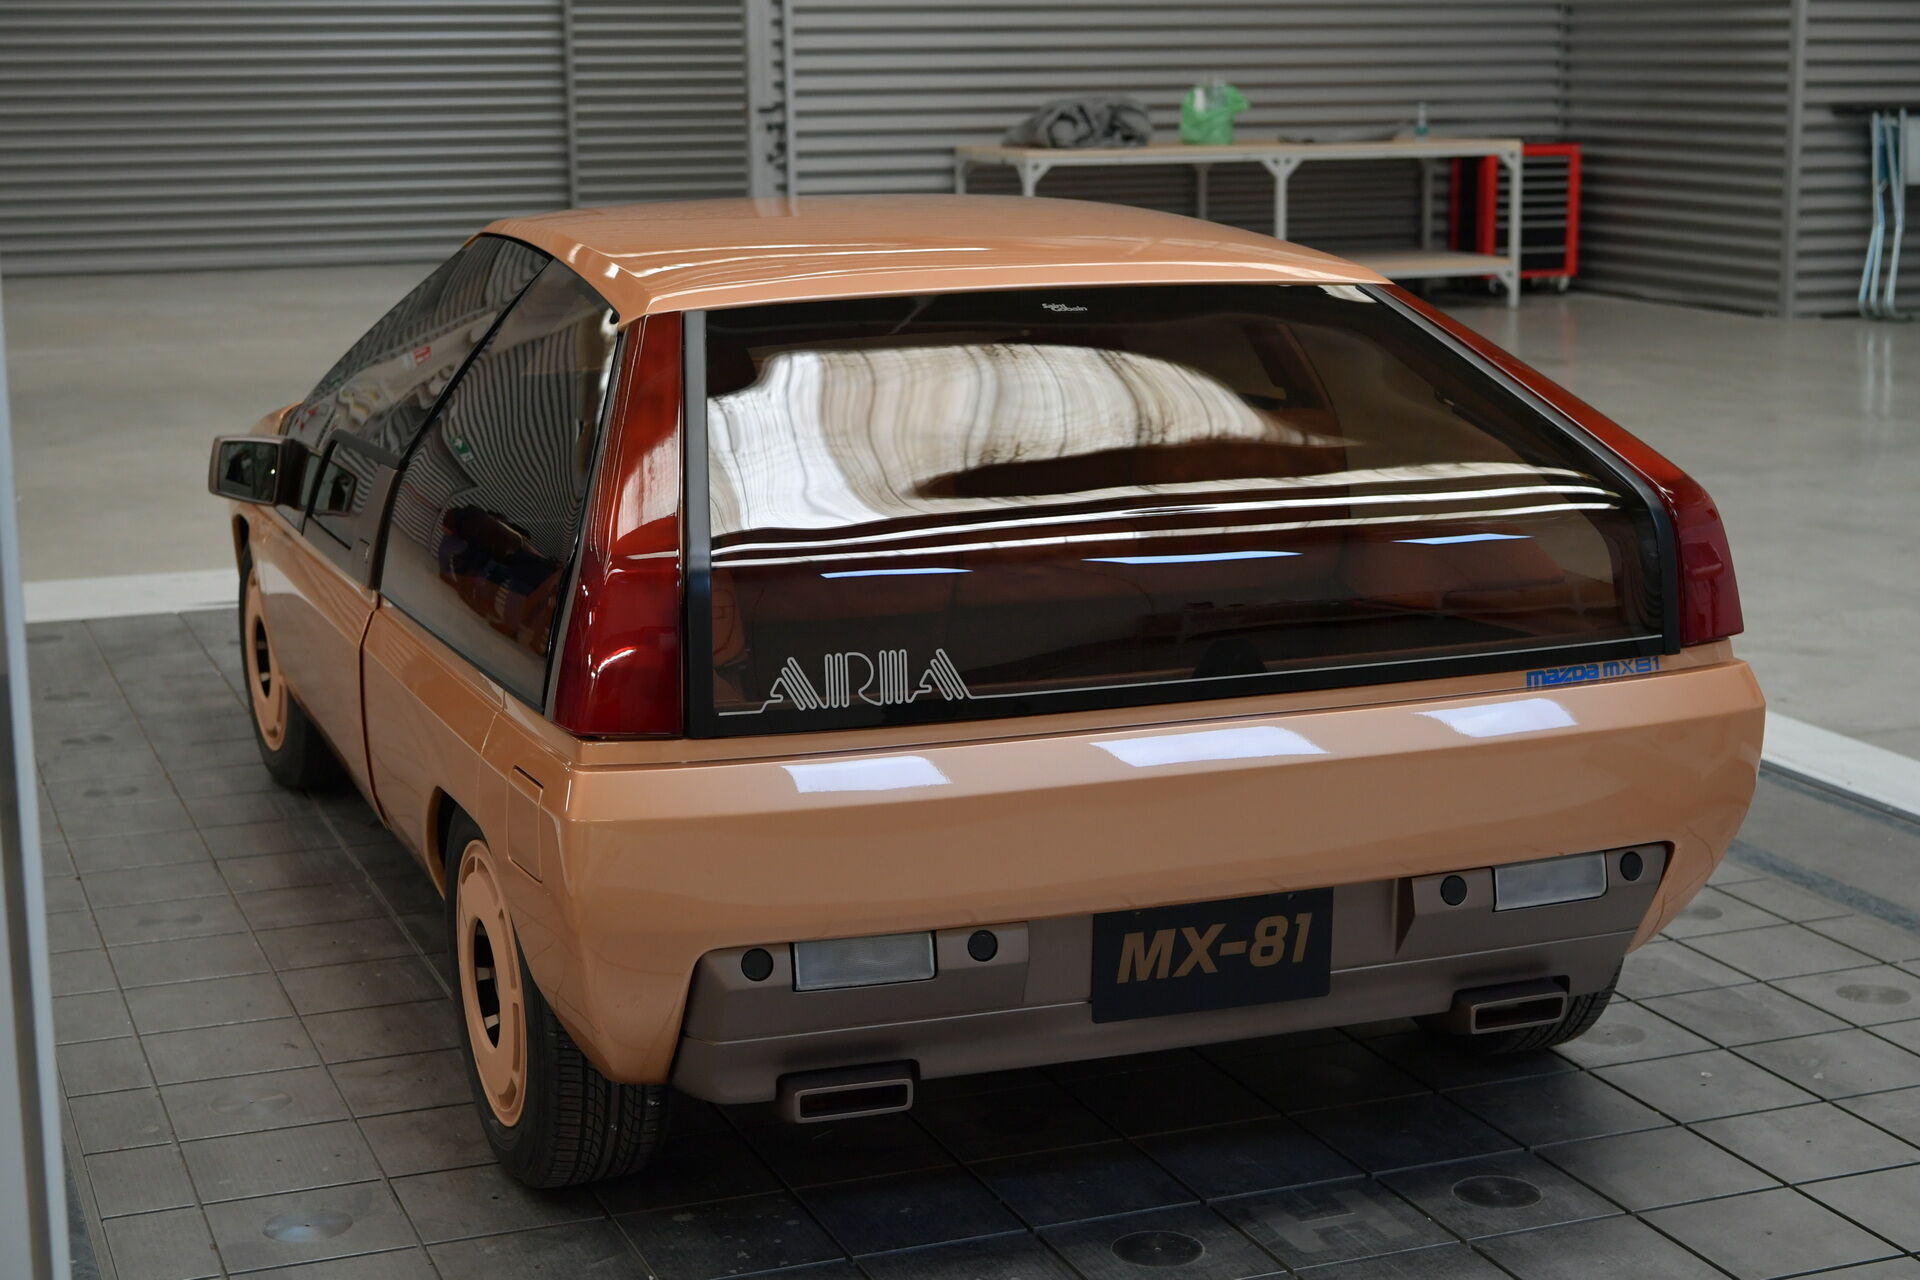 MX-81 Aria